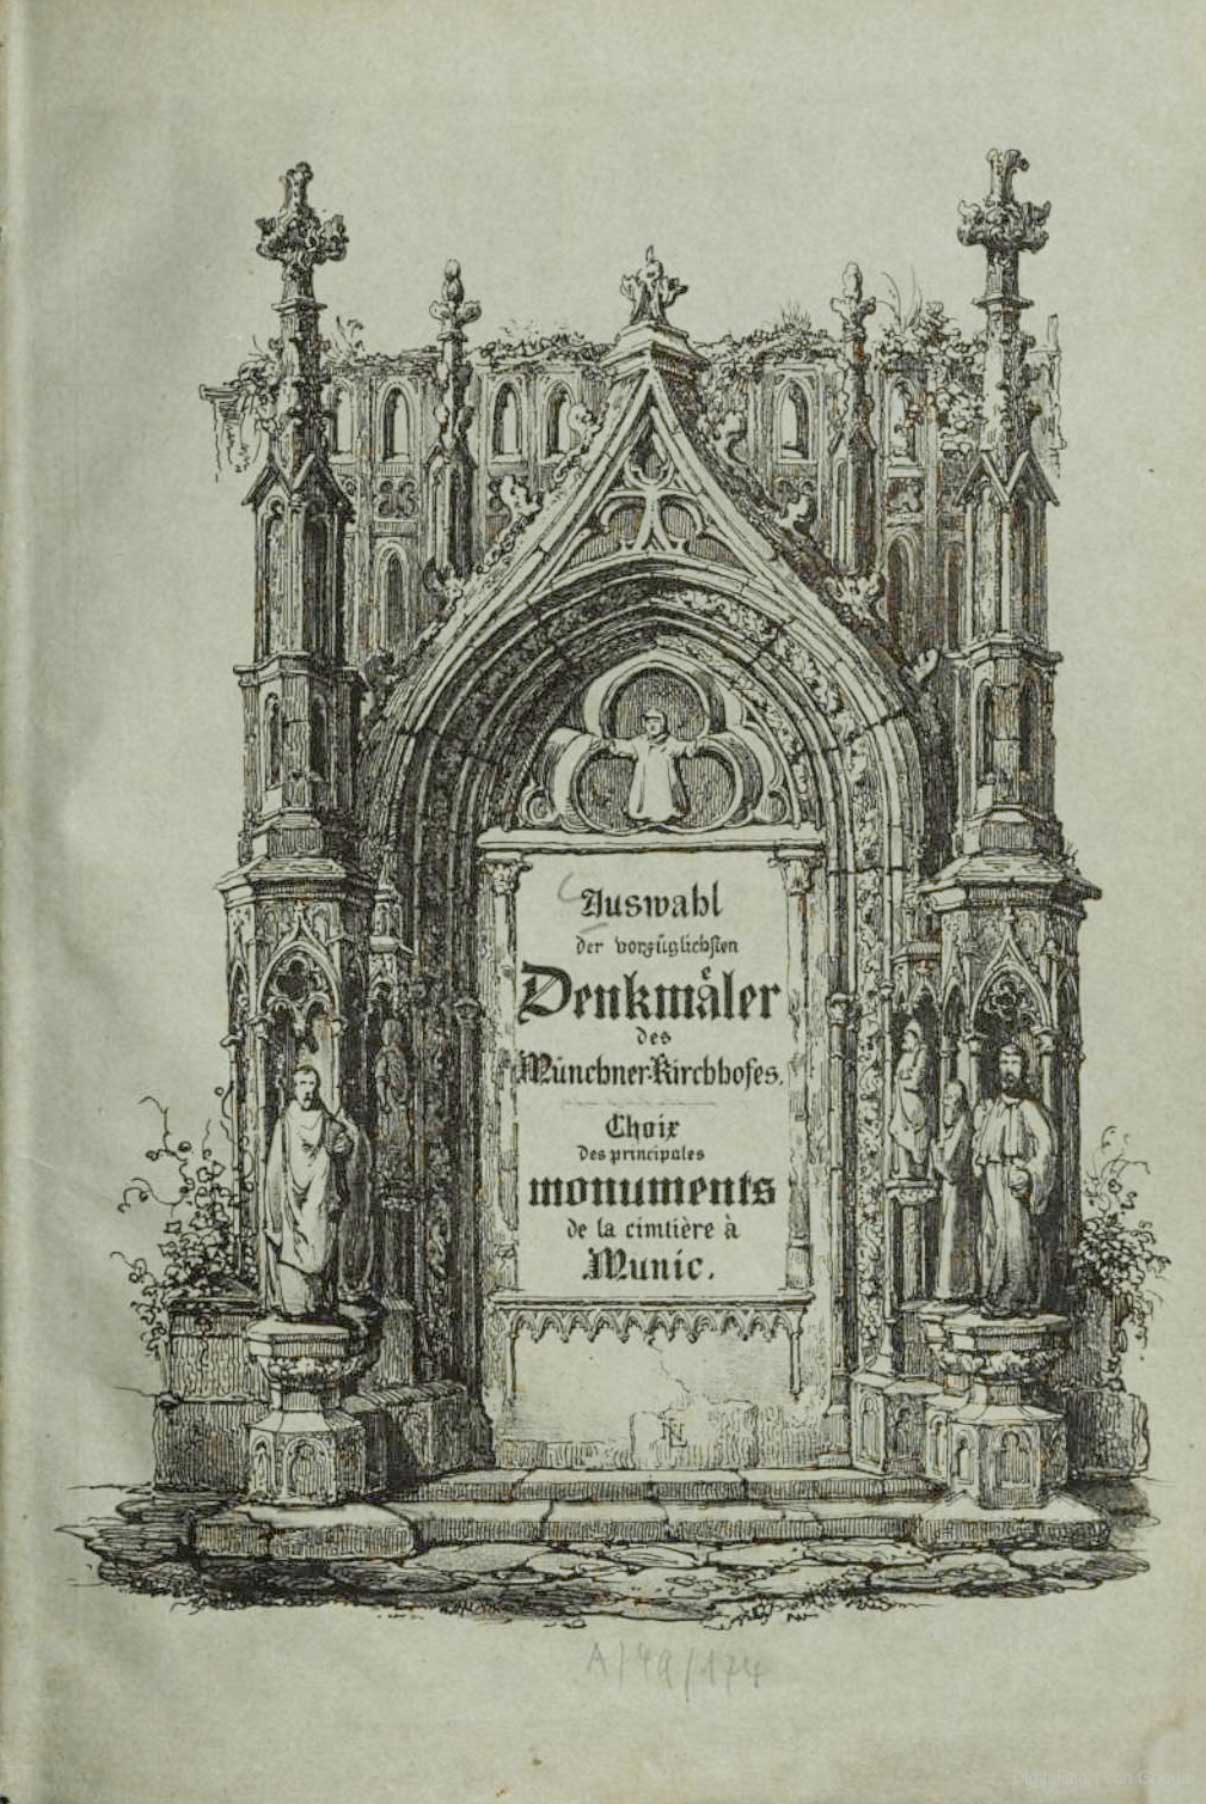 Auswahl der vorzüglichsten Denkmäler des Münchner Kirchfriedhofes